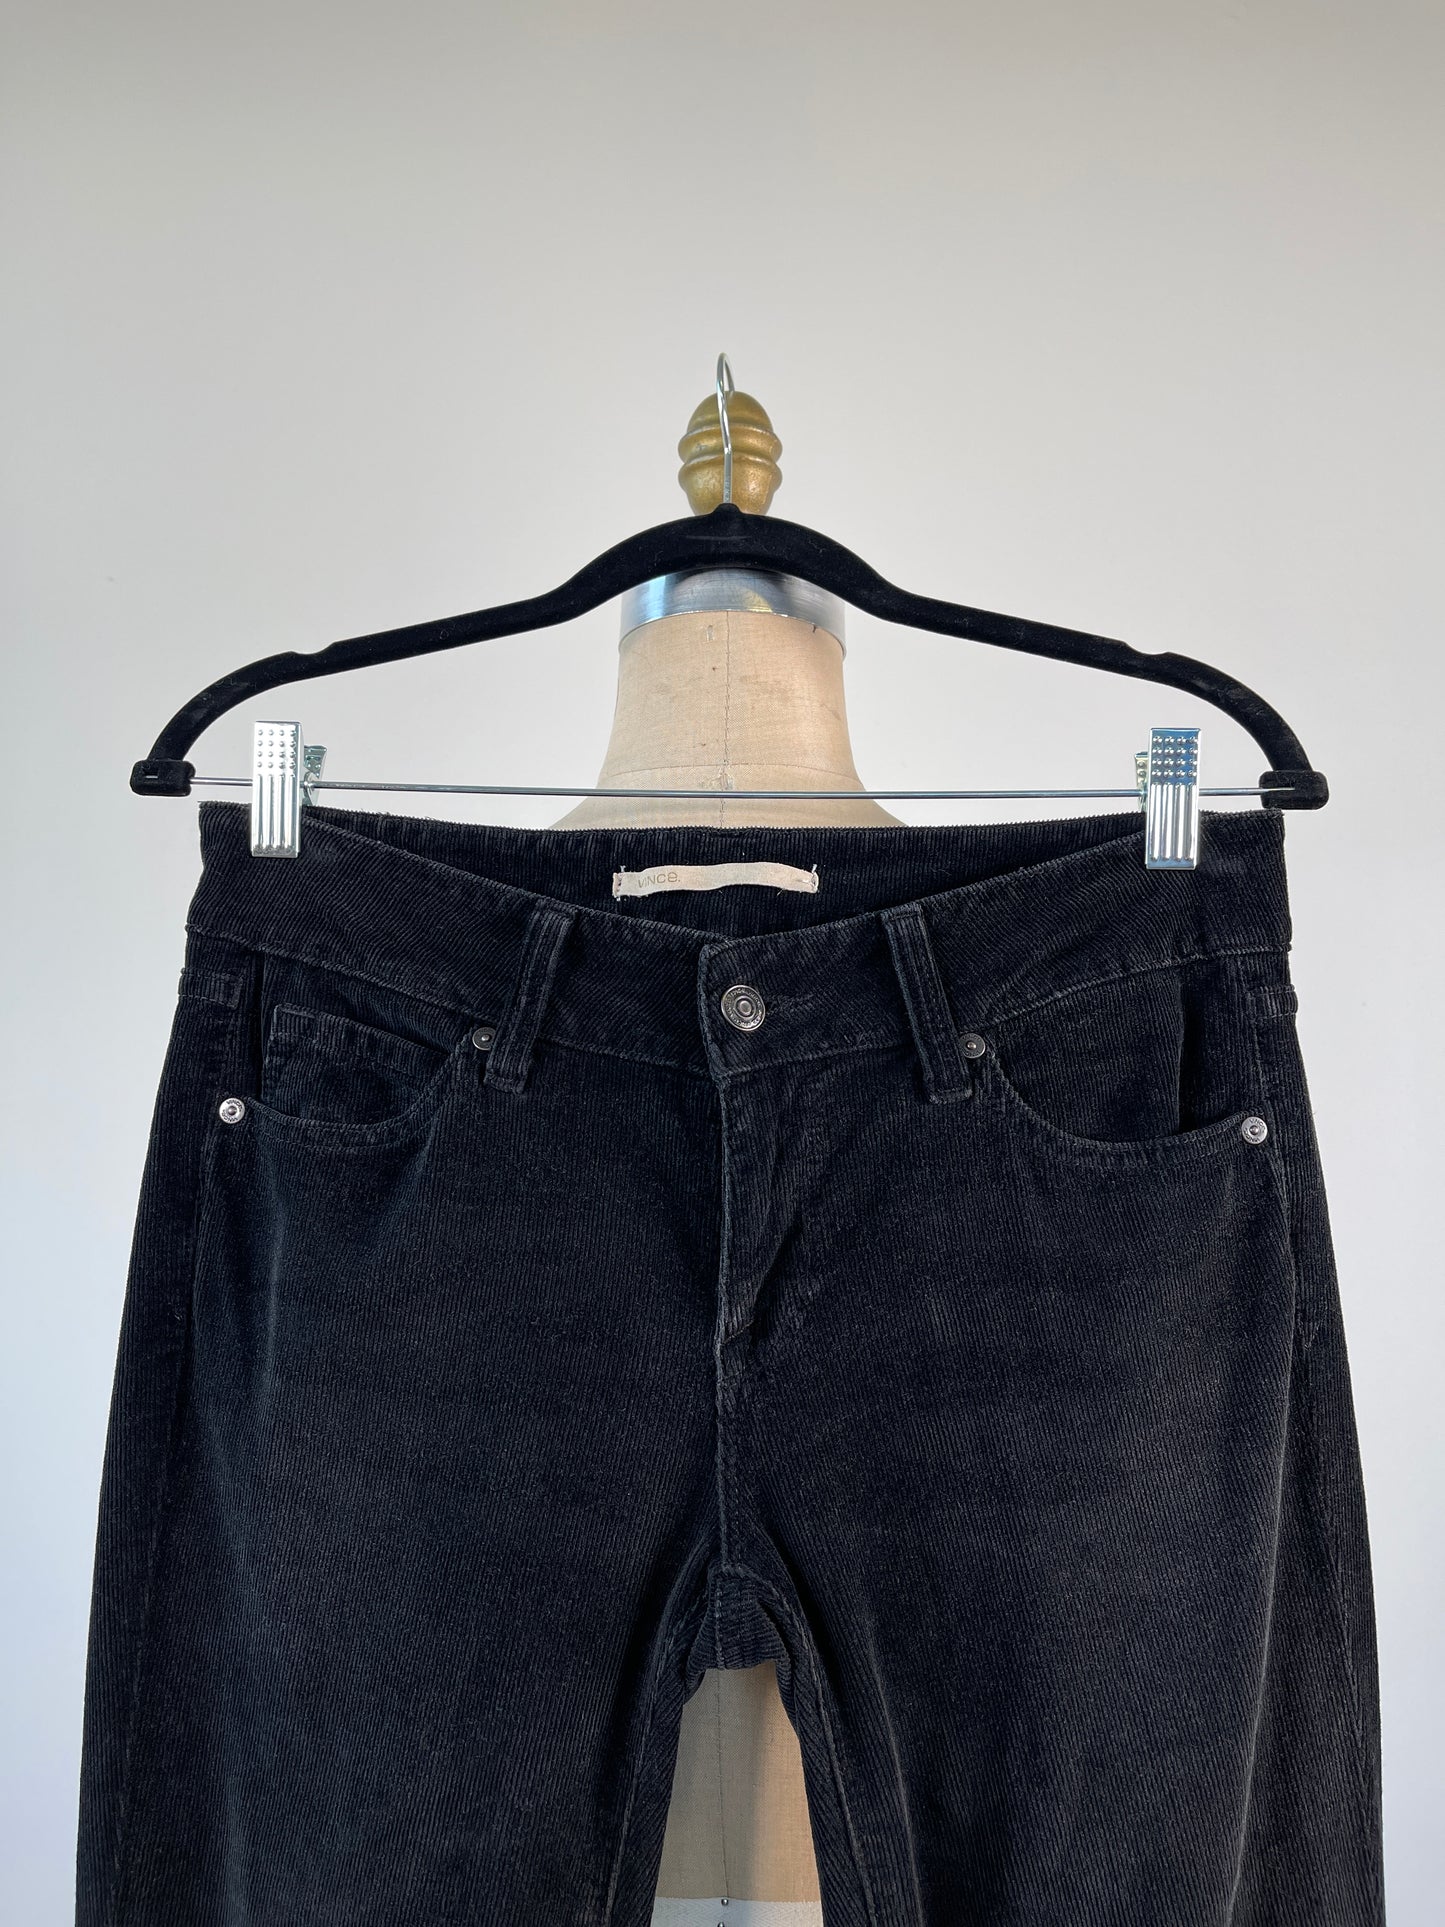 Pantalon en corduroy noir à ourlet évasé (XS)